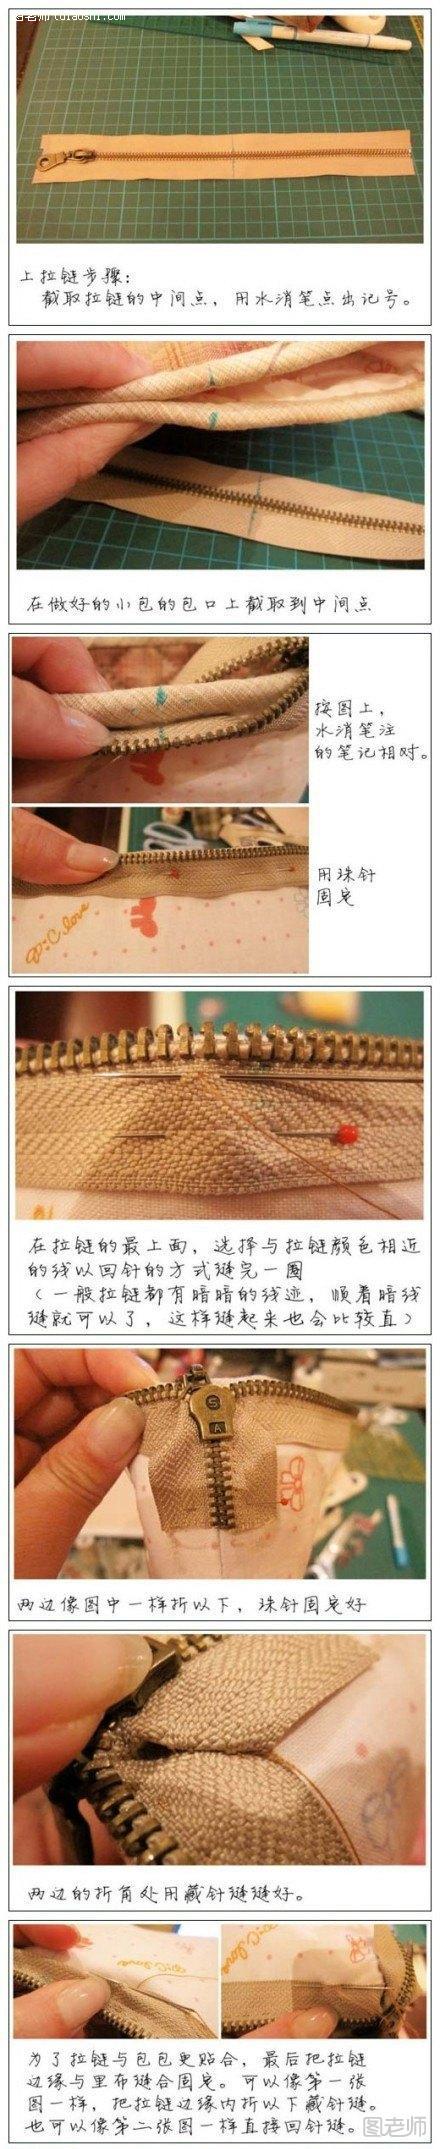 布艺拉链缝合手工教程 教您如何给布包装上拉链